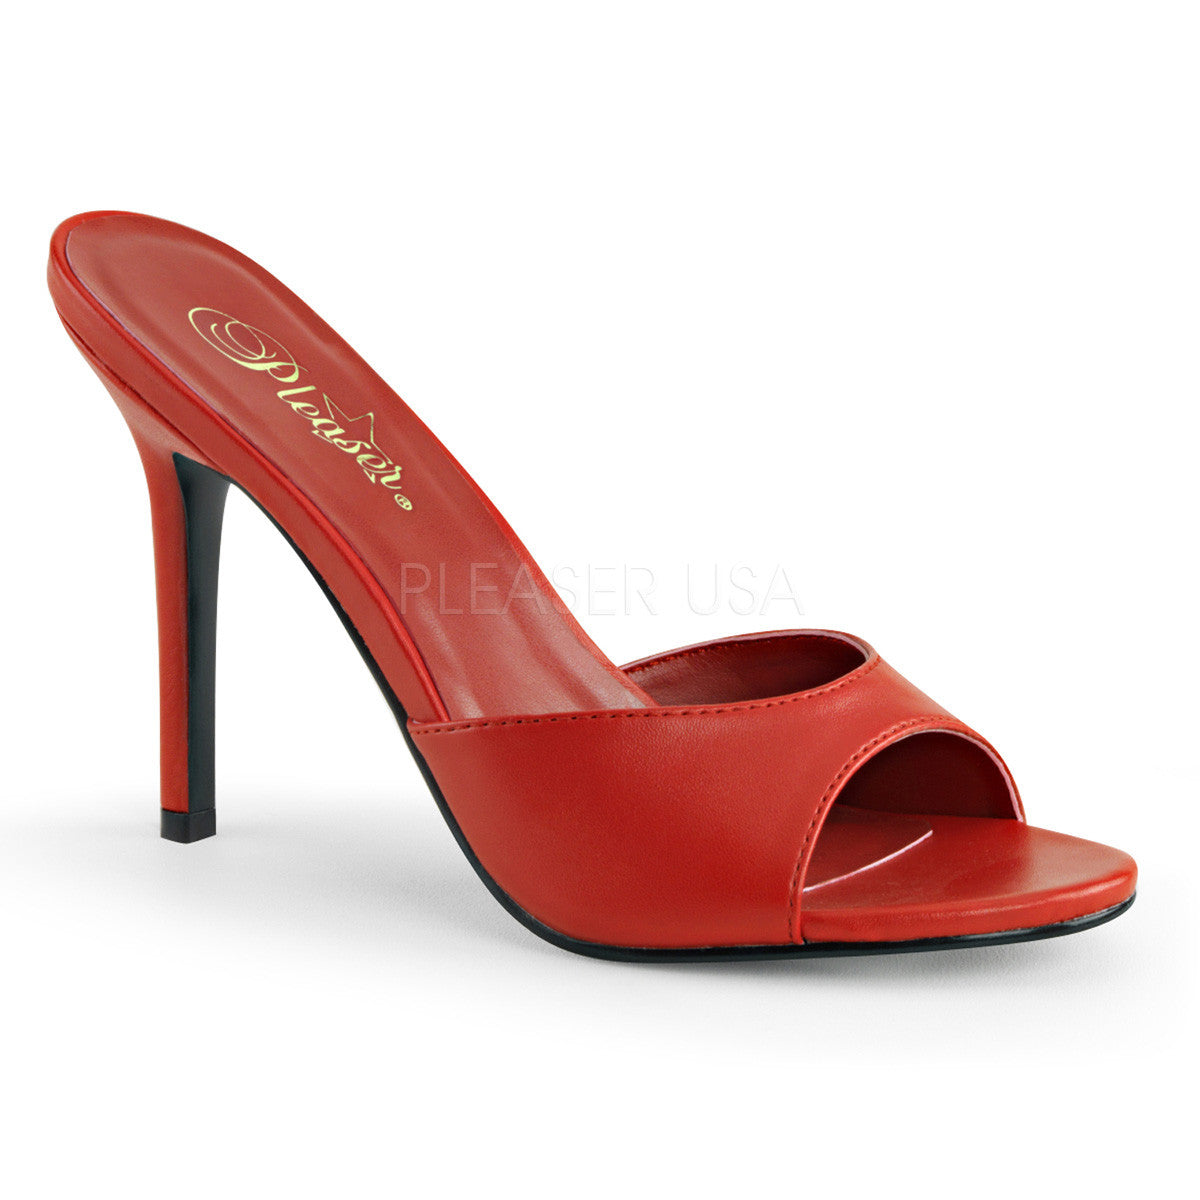 Pleaser CLASSIQUE-01 Red Pu Slides - Shoecup.com